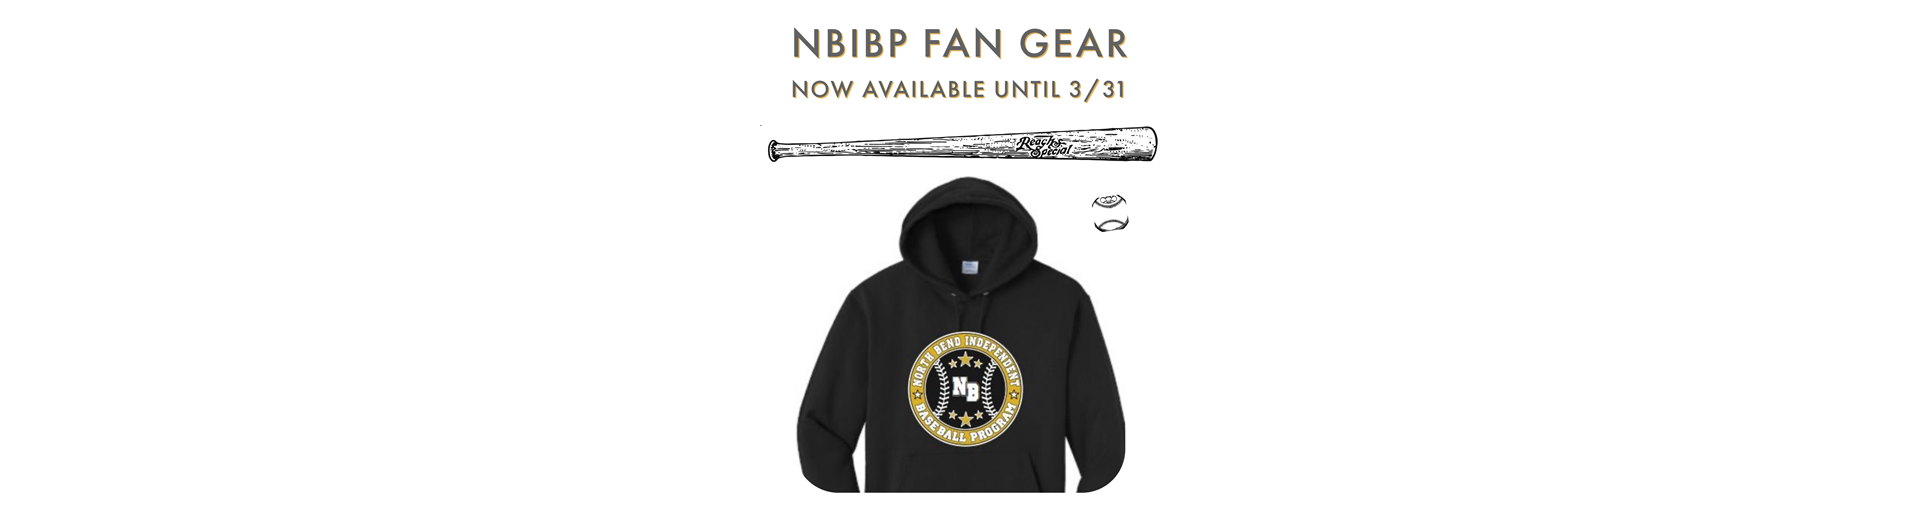 Fan Gear - Now Available